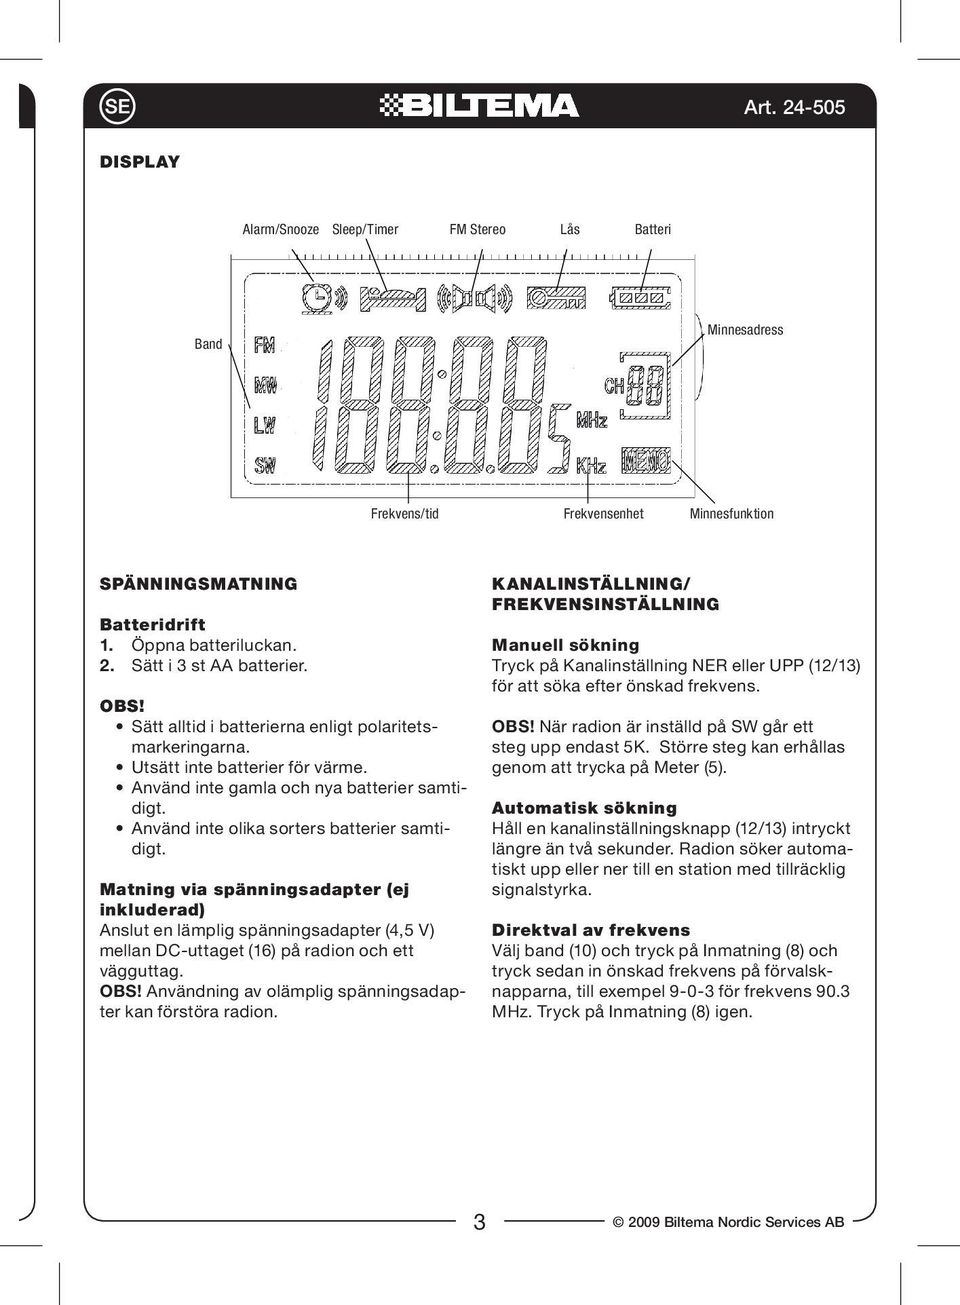 Matning via spänningsadapter (ej inkluderad) Anslut en lämplig spänningsadapter (4,5 V) mellan DC-uttaget (16) på radion och ett vägguttag. OBS!